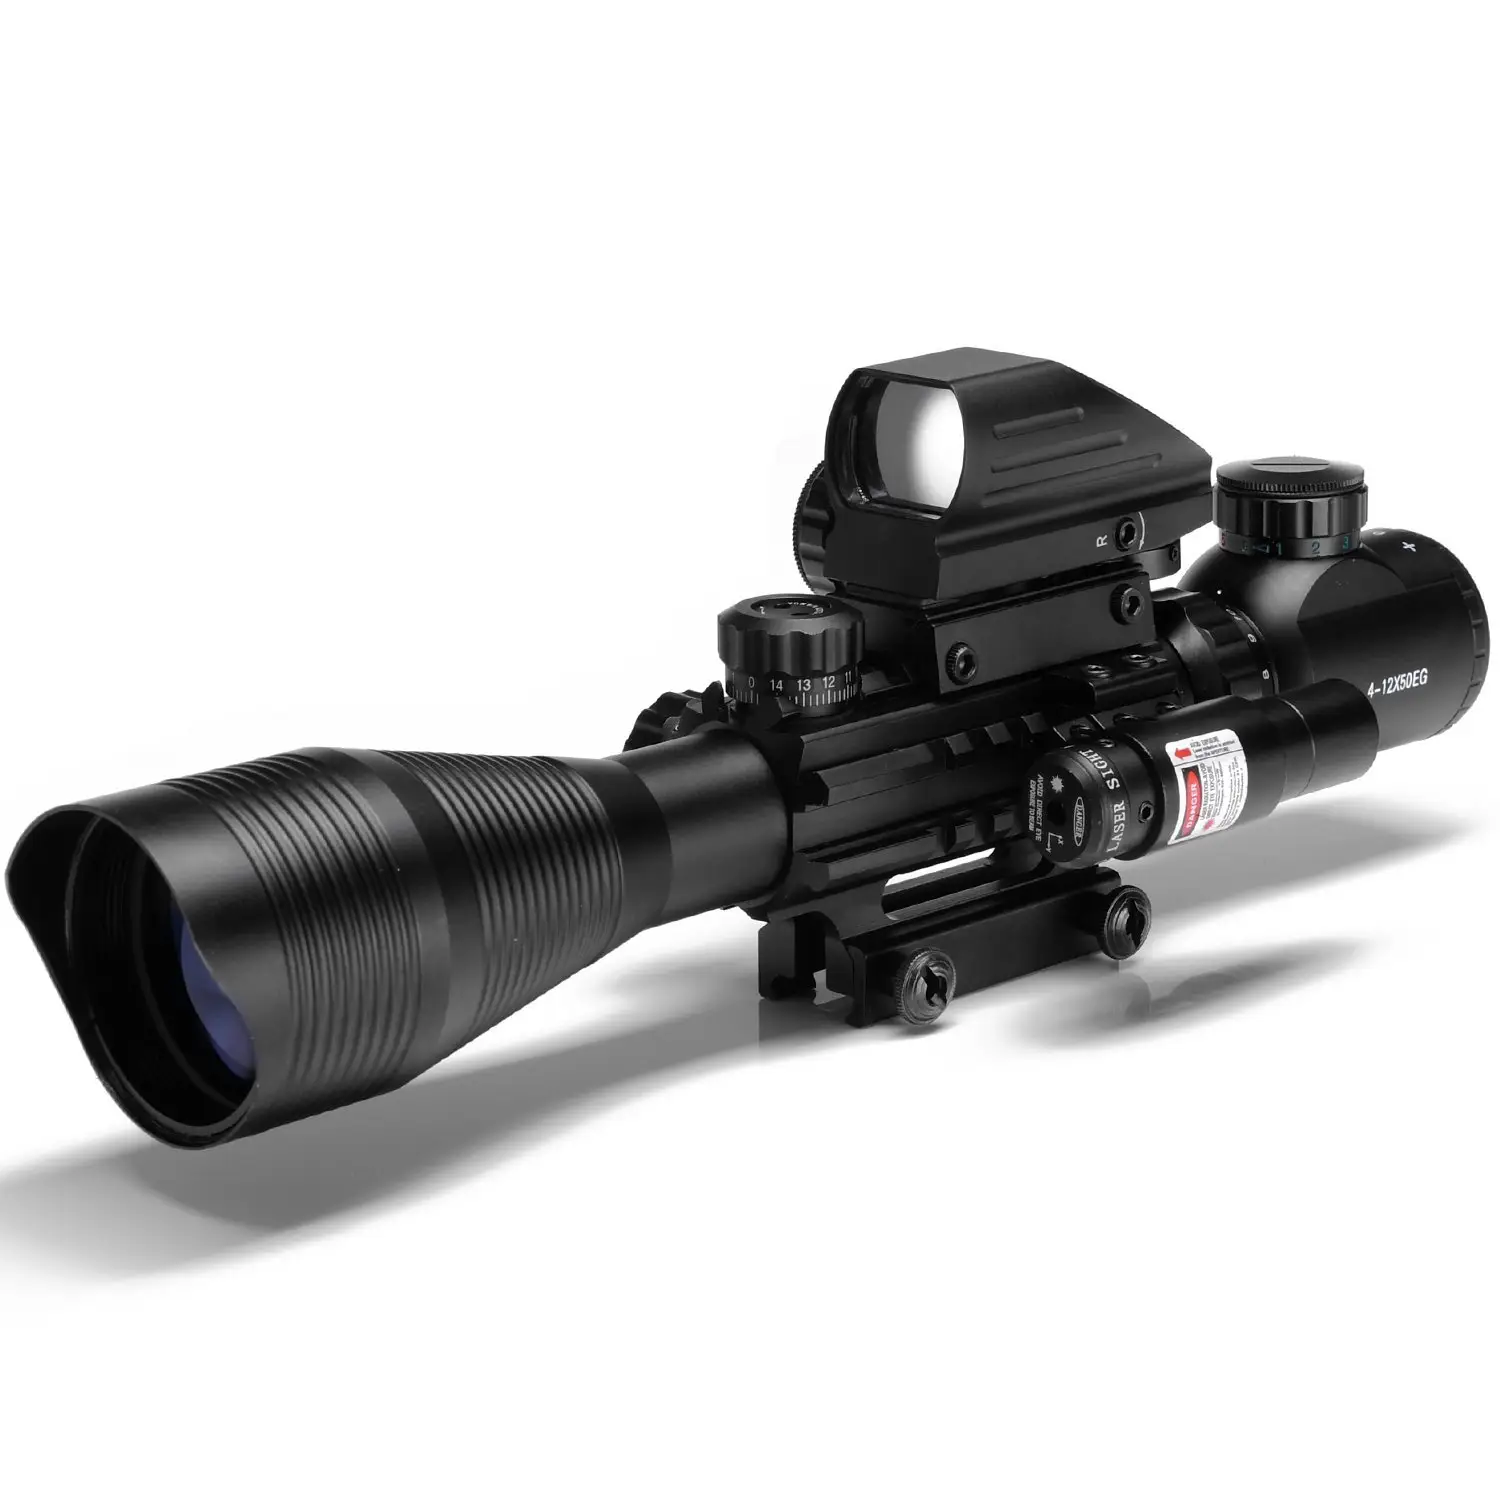 Spike Senapan C4-16x50EG Dual Diterangi dengan Taktis 4 Reticle Red Dot Sight dan Merah Laser 3 In 1 Ruang Lingkup